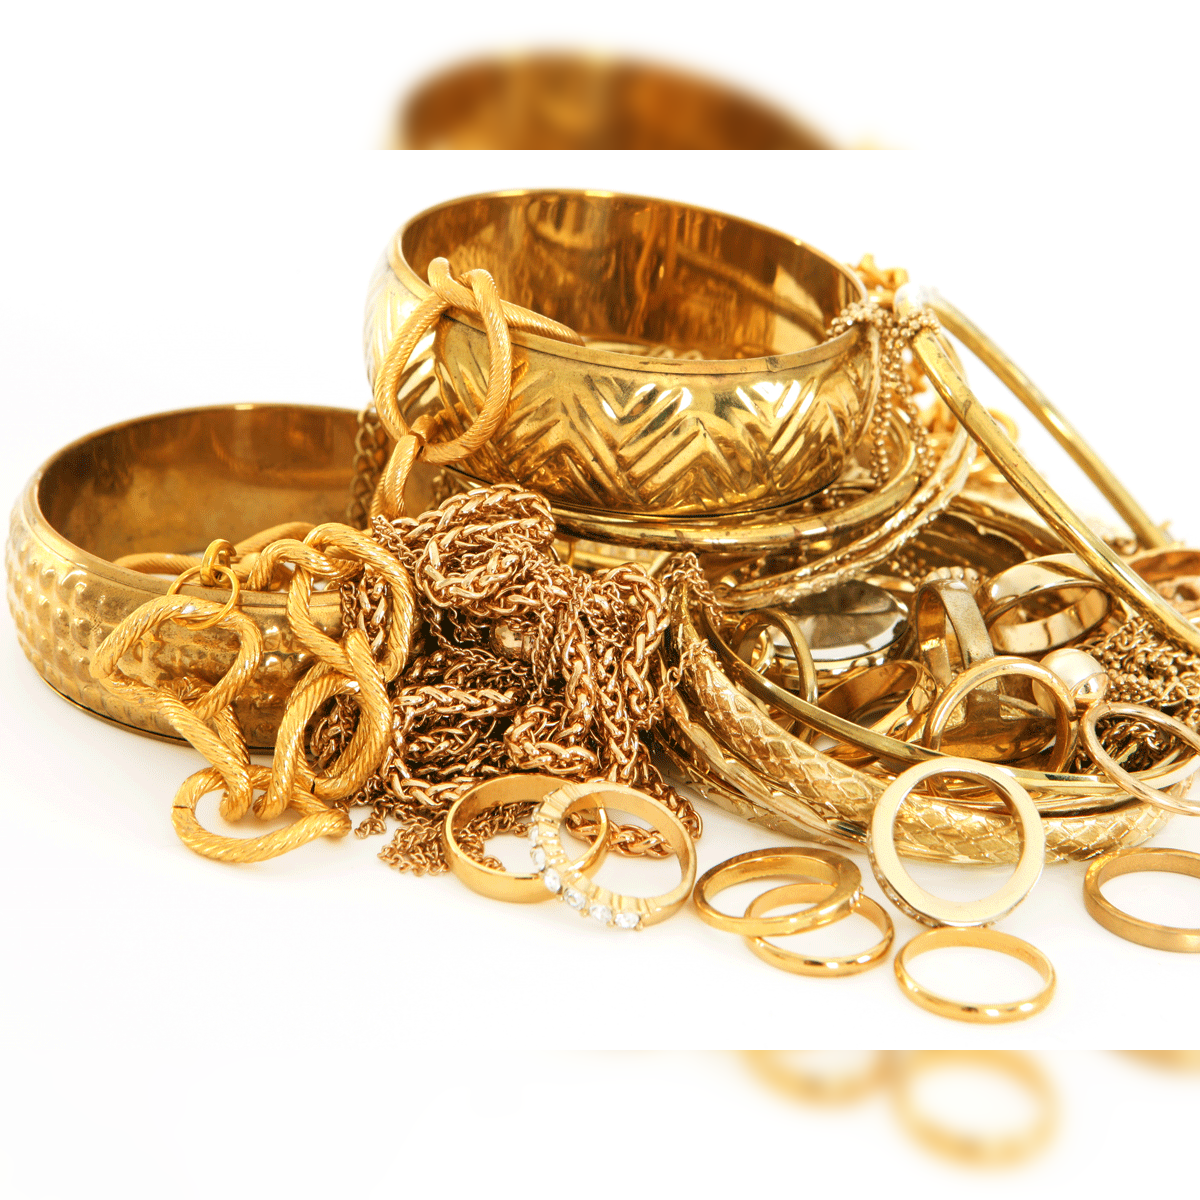 Sri vijay jewellers- Trt